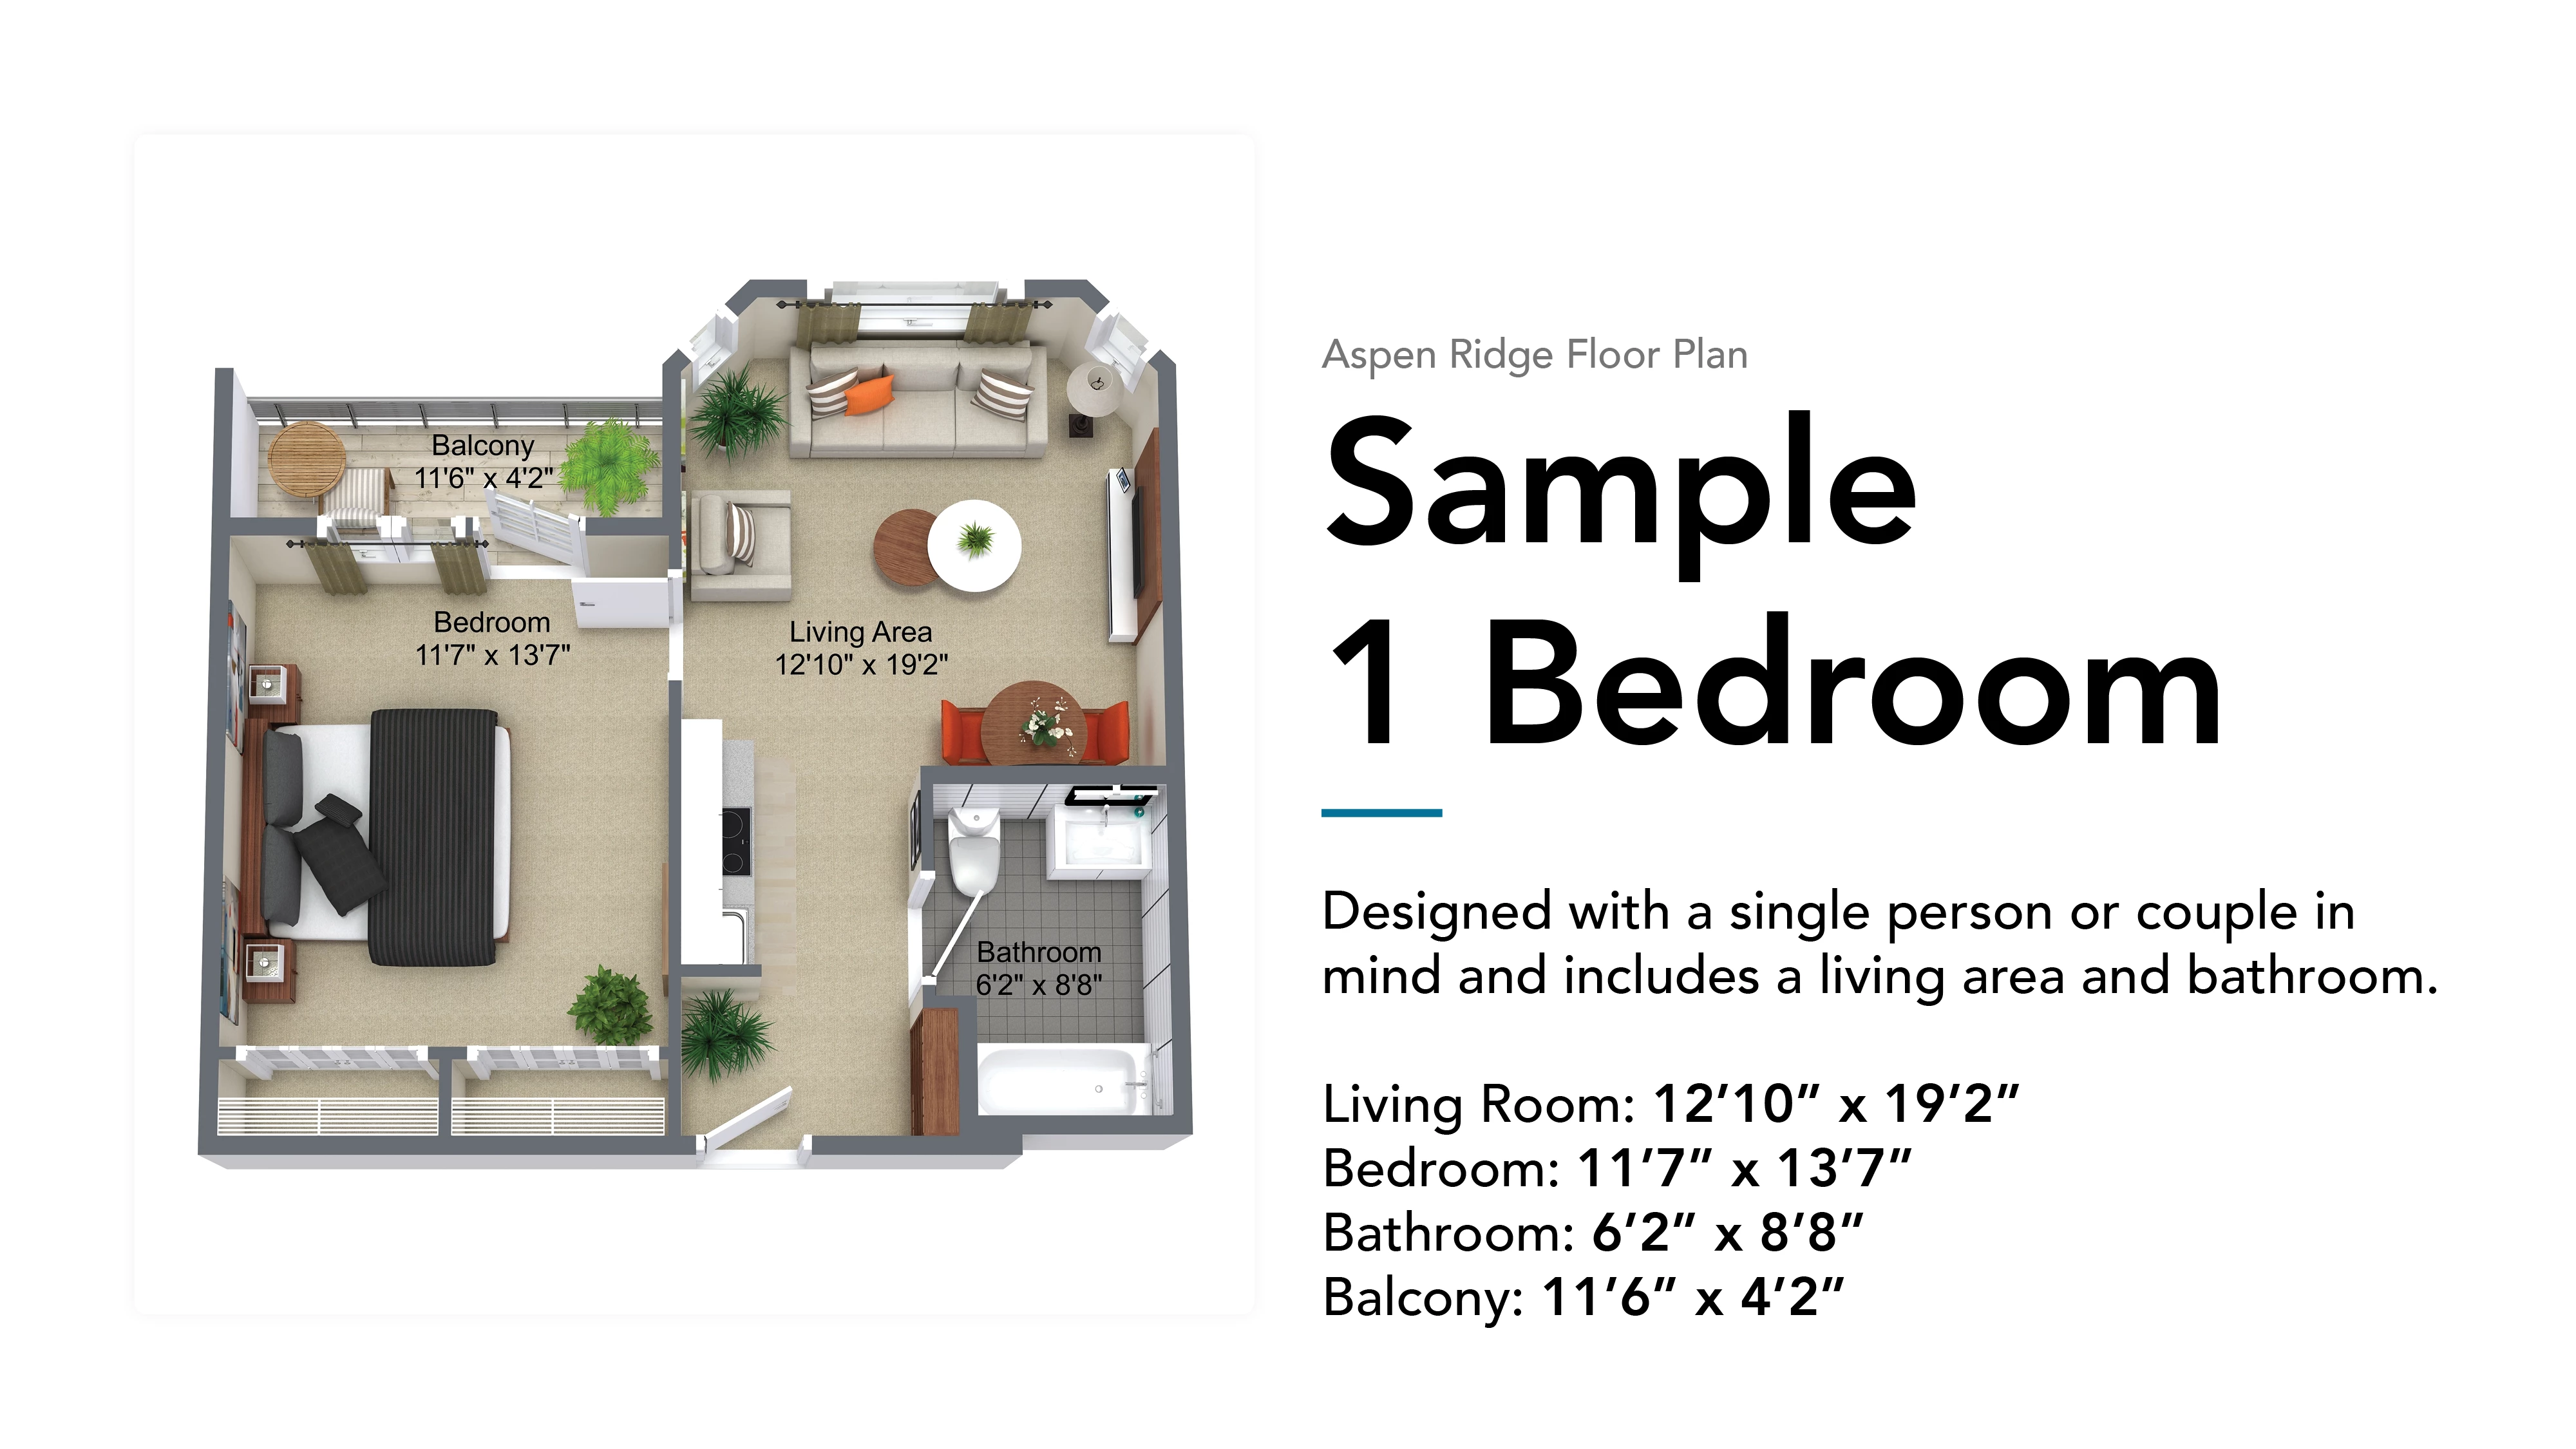 aspen ridge sample 1 bedroom floor plan